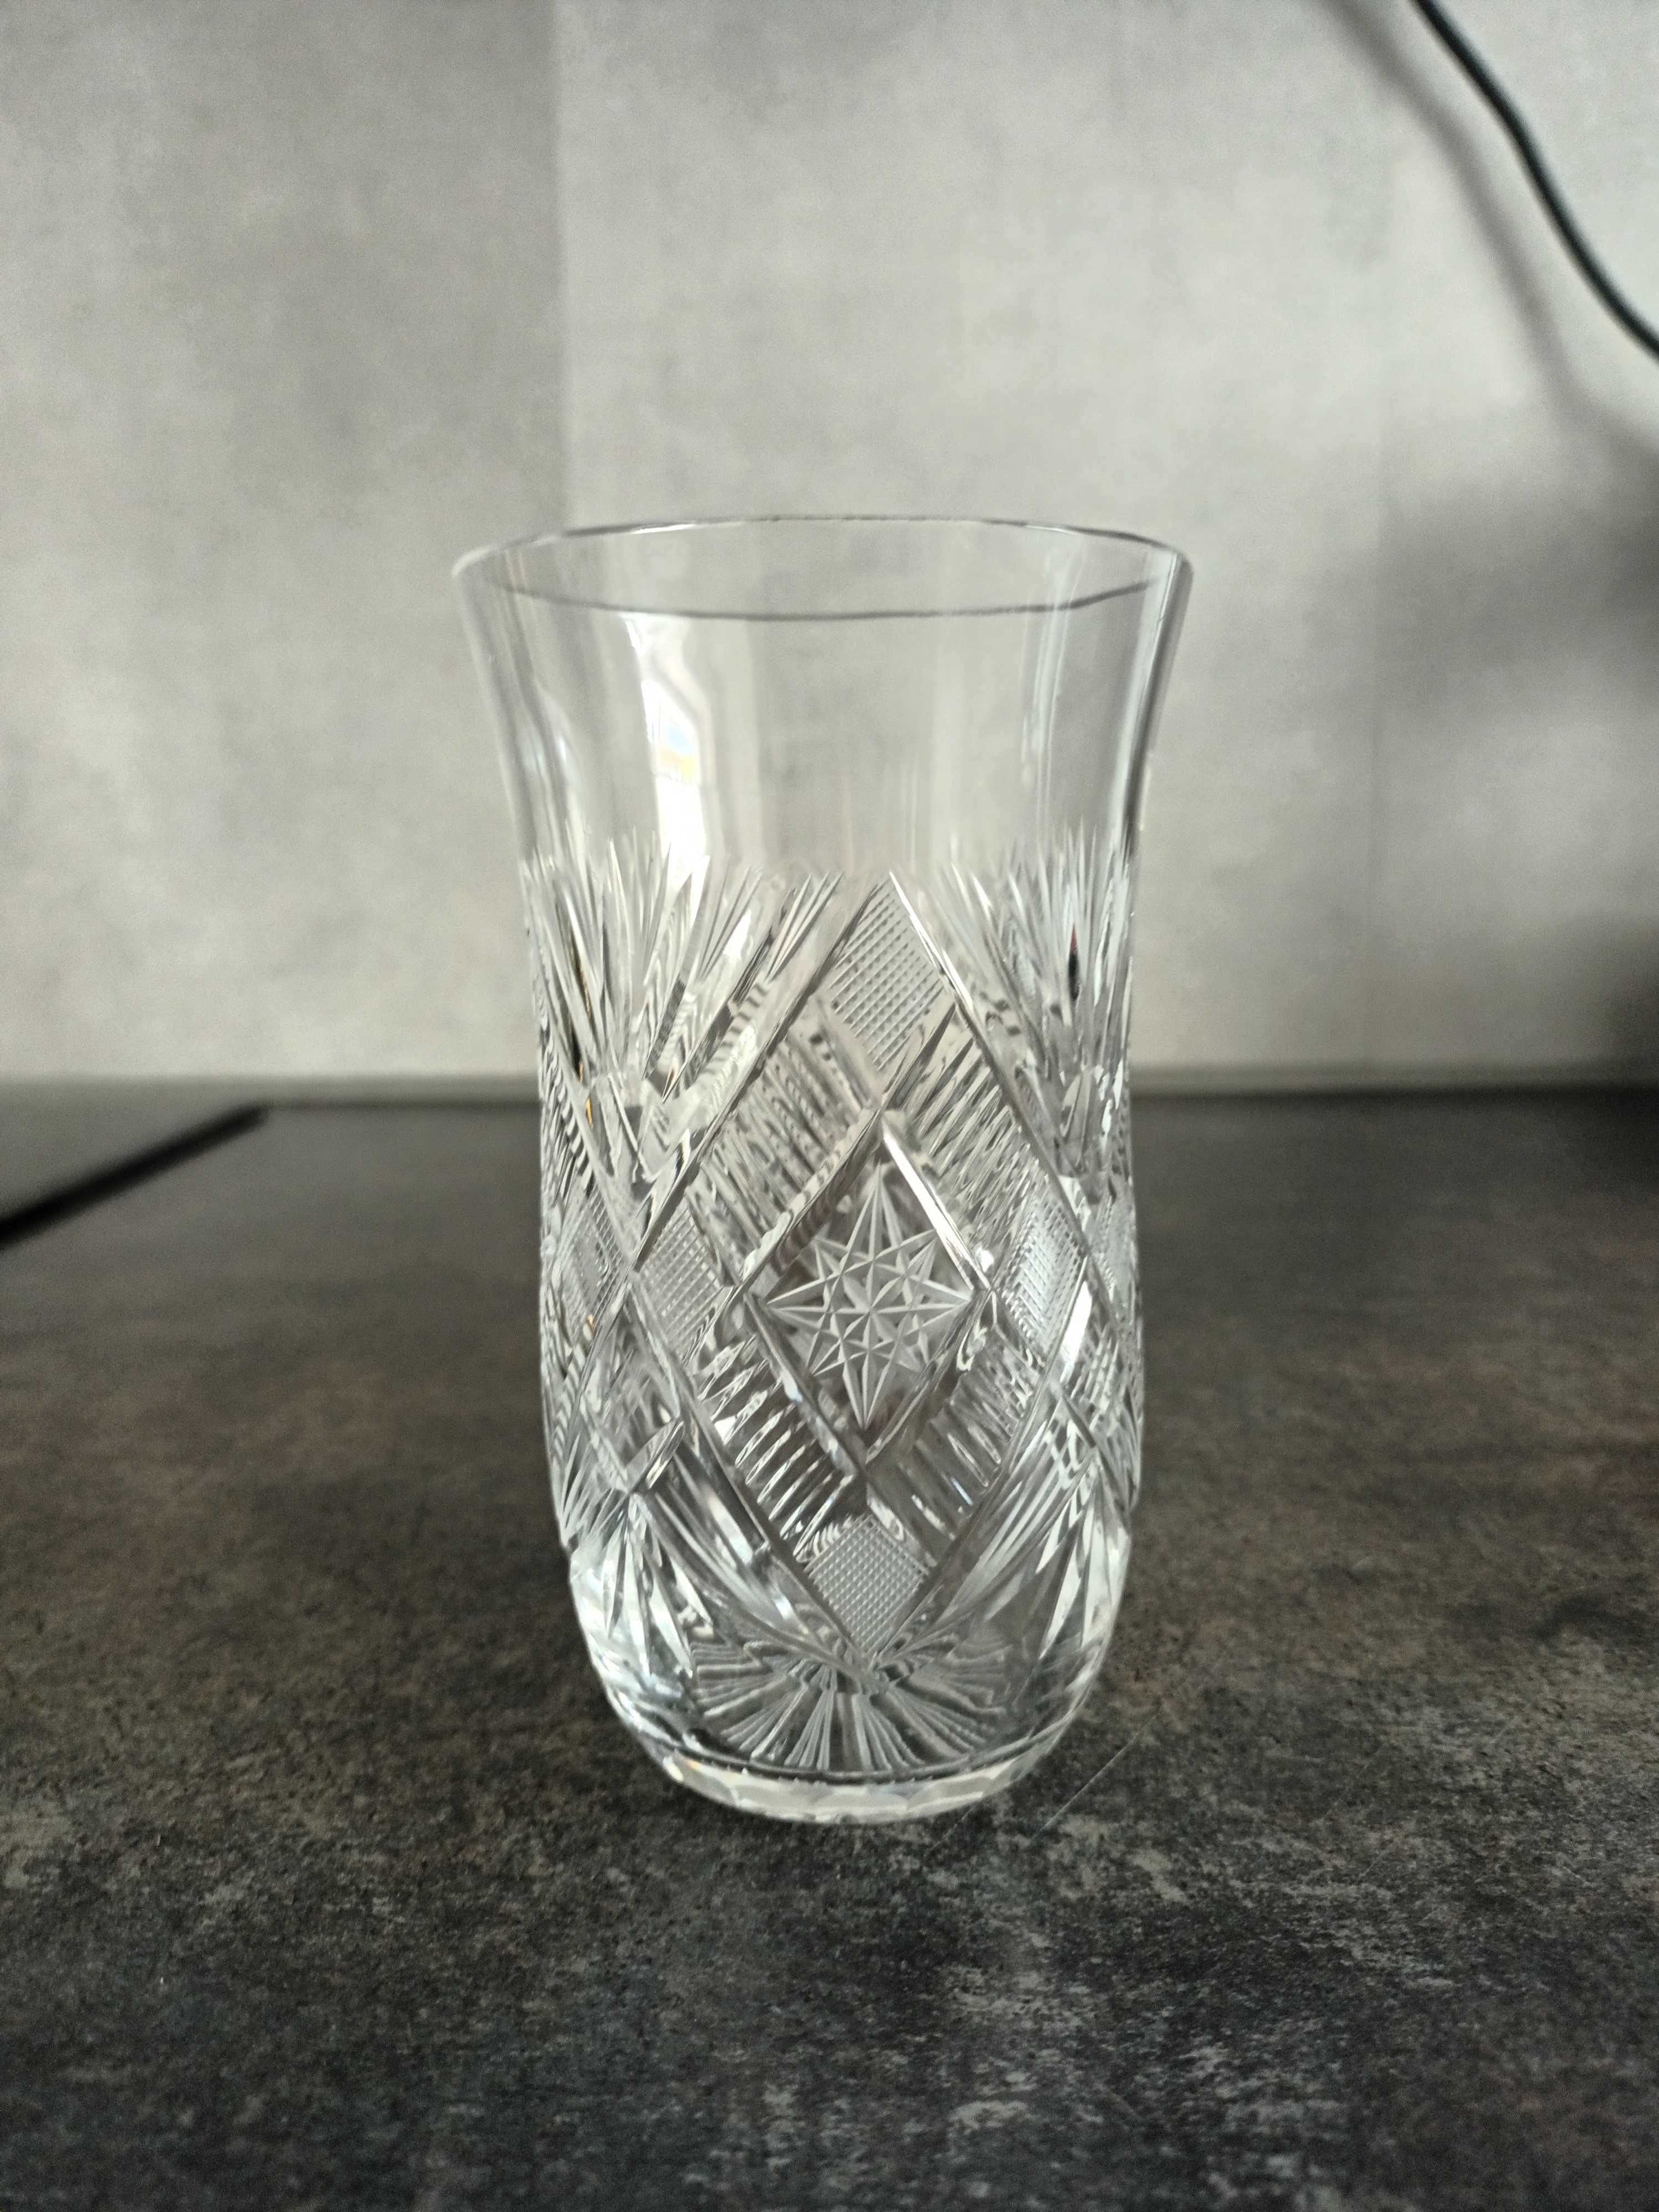 Antyk, kryształ, szklanka lata 30 ub wieku